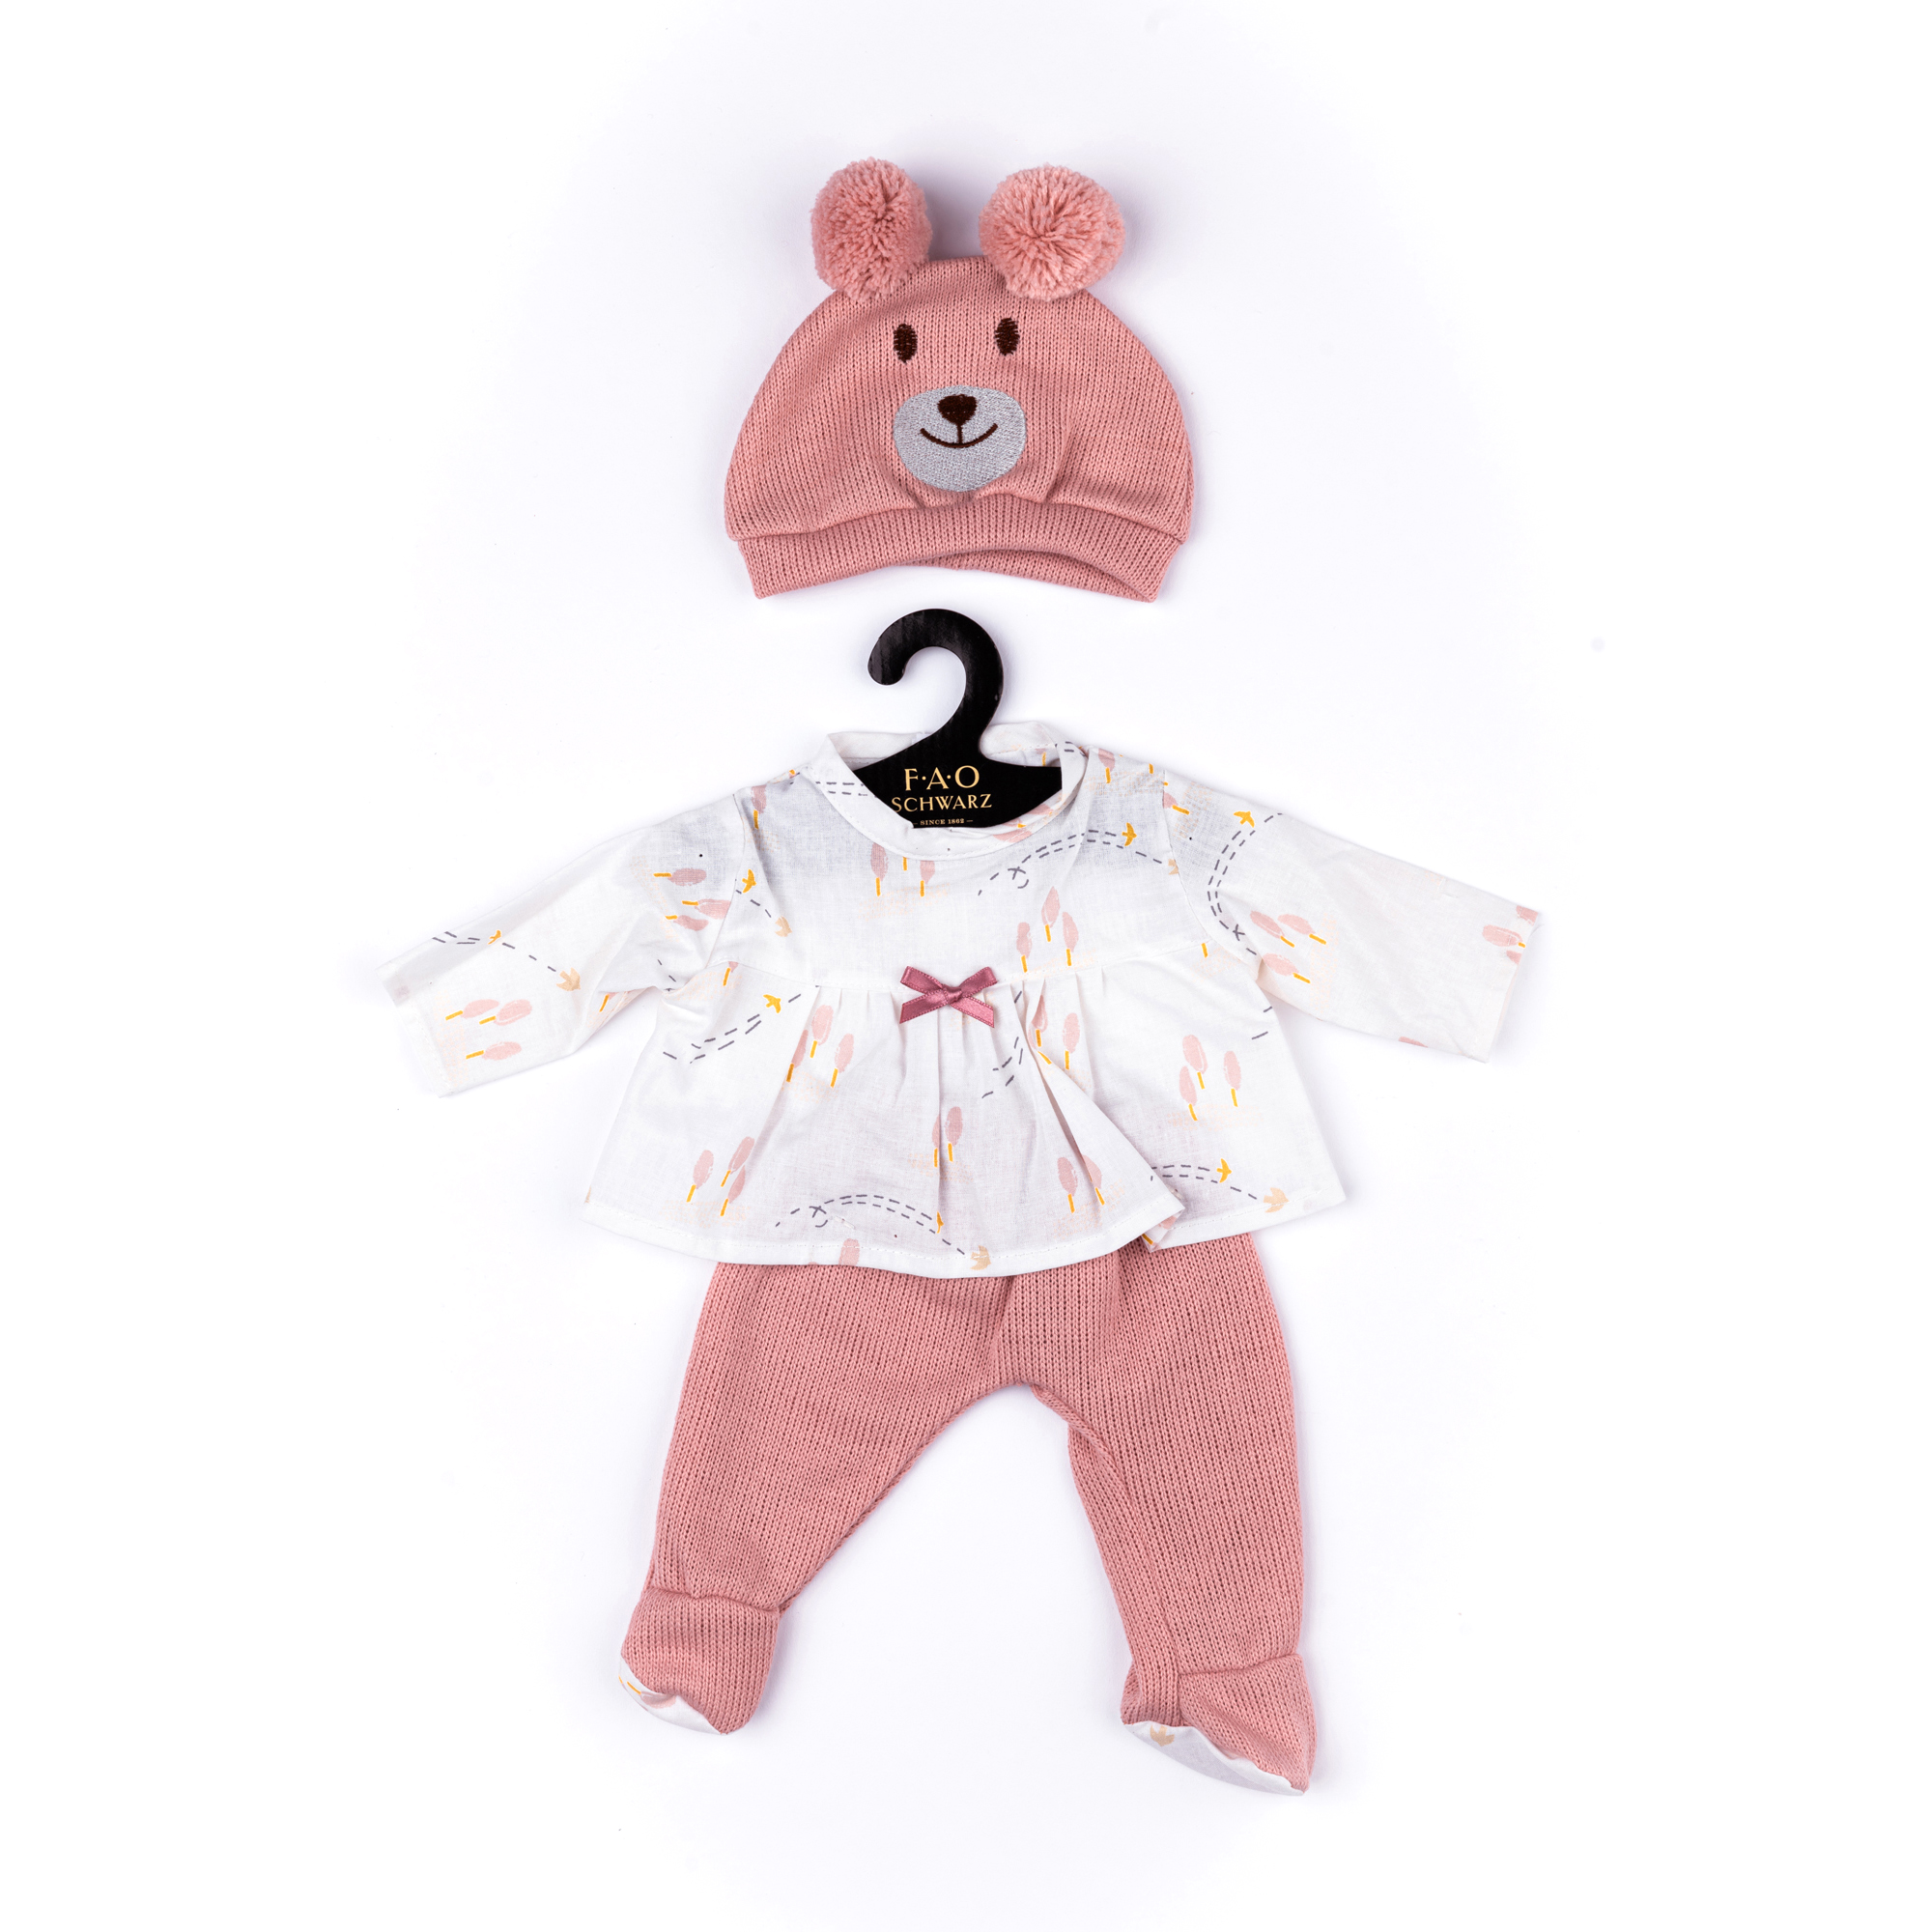 Completo rosa orsetto con camicetta, pantalone e cappellino per My FAO Doll 40 cm - FAO Schwarz